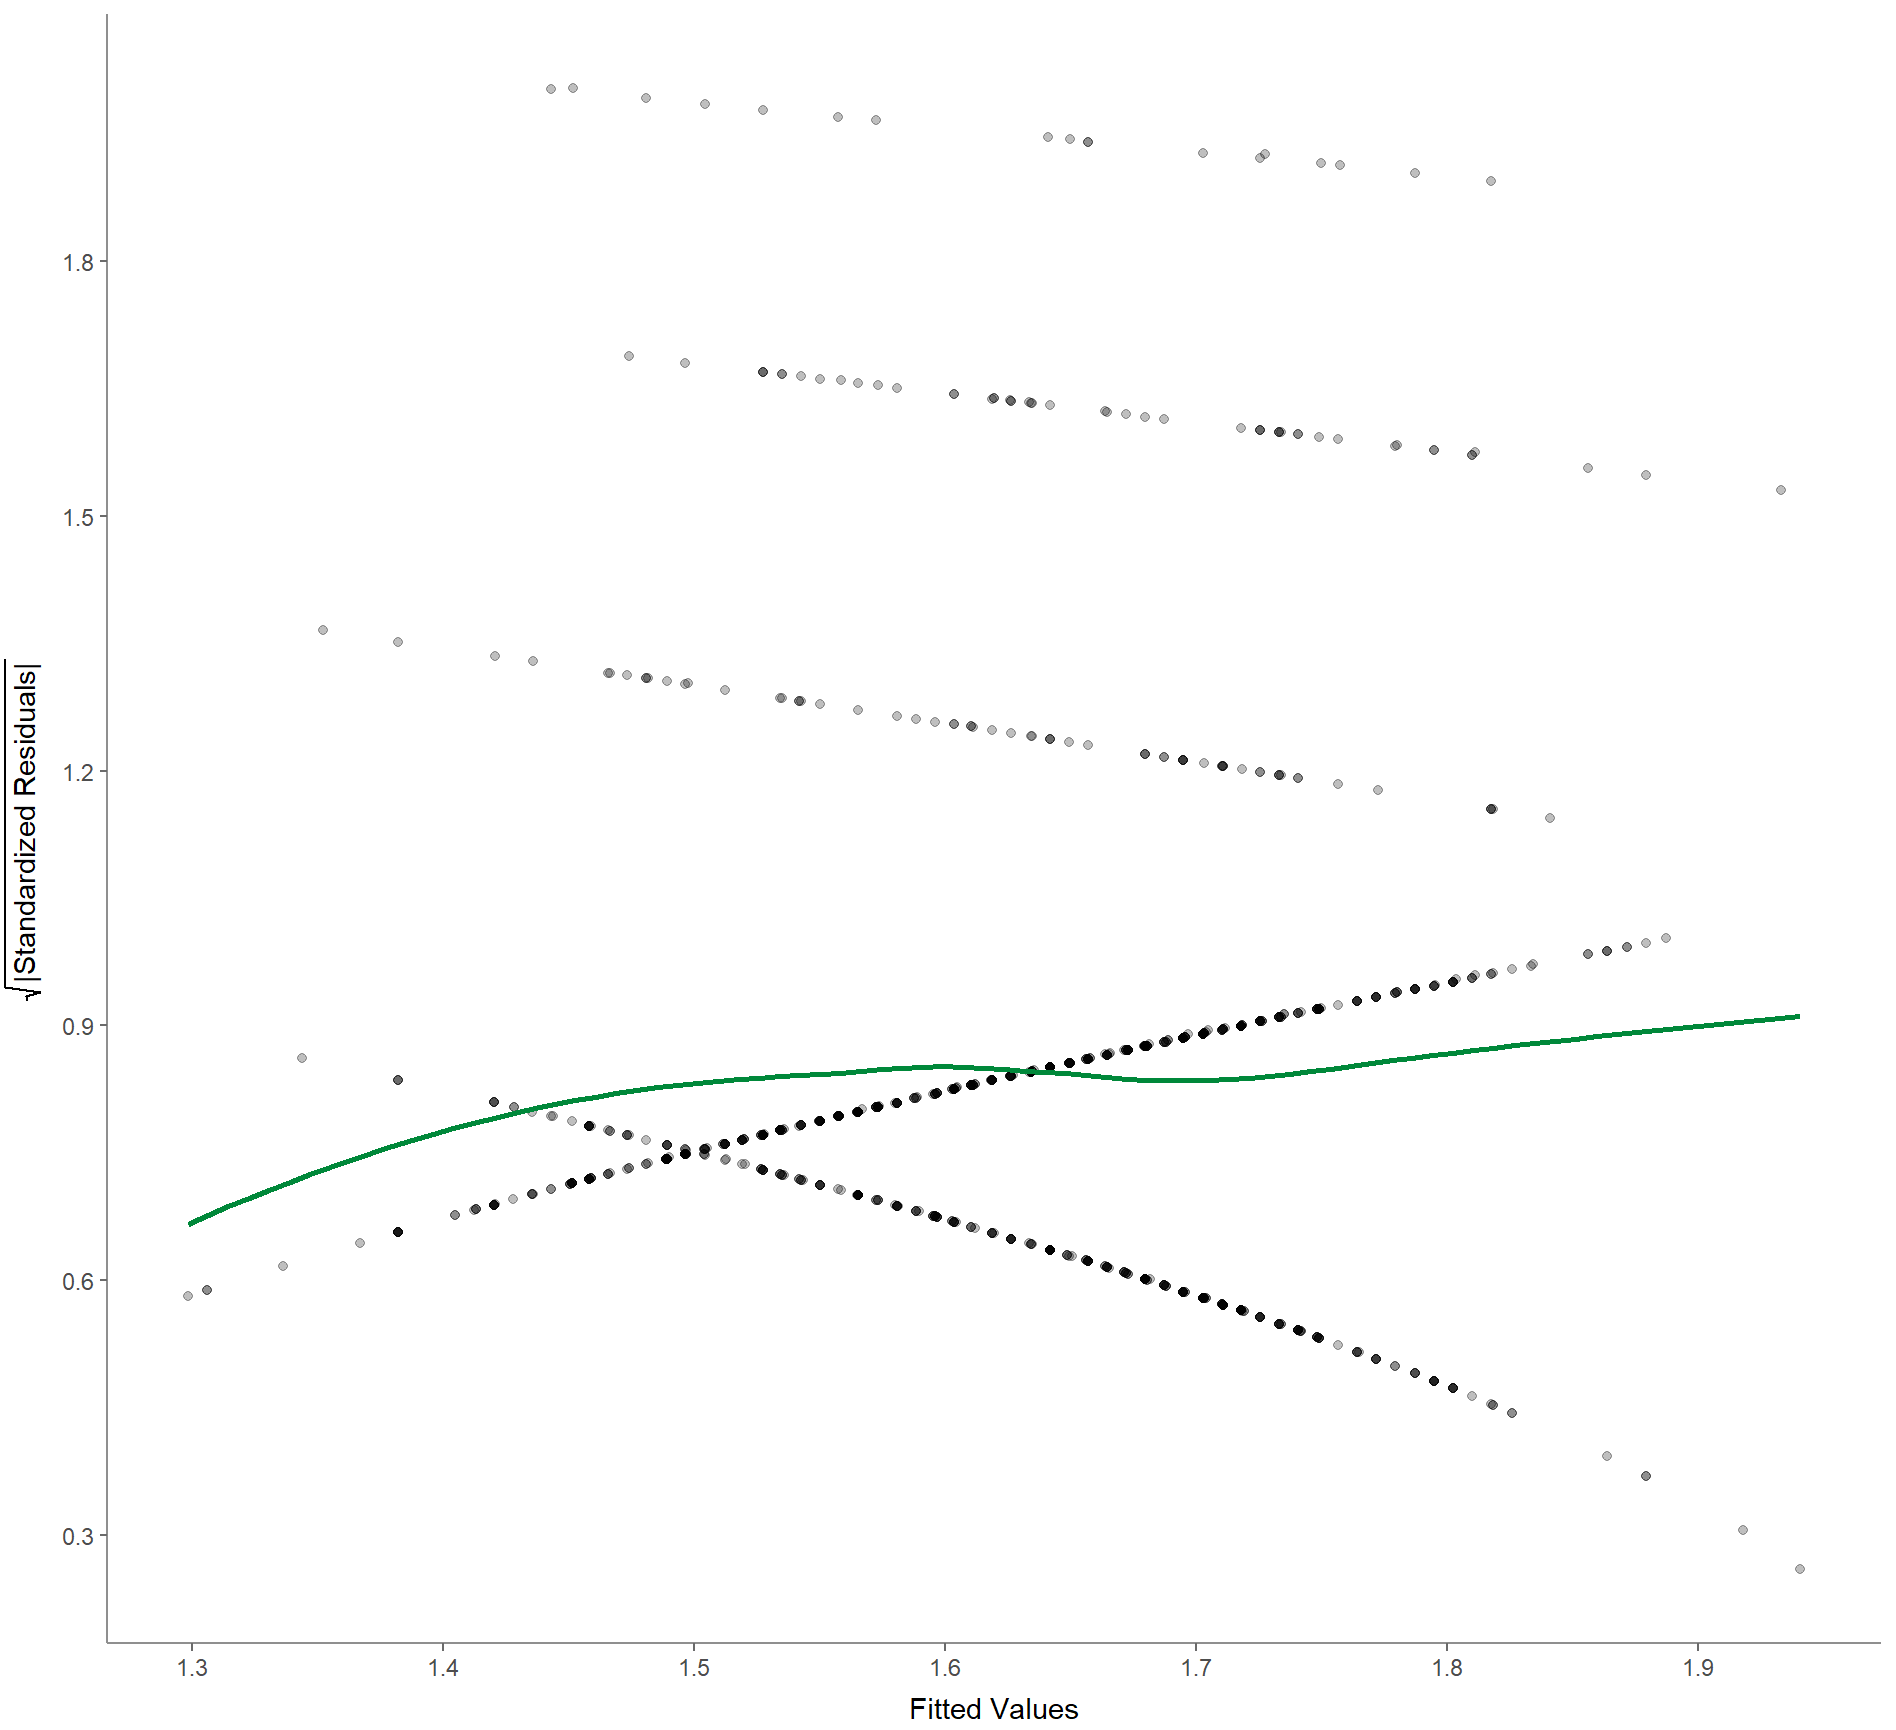 Exportiertes Bild der R-Ausgabe: Es ist ein x-y-Diagramm dargestellt. Die x-Achse ist mit „Fitted Values“ und die y-Achse mit der Wurzel der standardisierten Residuen beschriftet. Ein grüner Graph mit der Tendenz nach rechts-oben ist neben der Punktewolke dargestellt. Die Punktewolke, die hier aus fünf diskreten gepunkteten Linien besteht, hat in vier fällen eine Tendenz von links-oben nach rechts-unten. Eine stark gepunktete Linie verläuft jedoch nach rechts-oben.